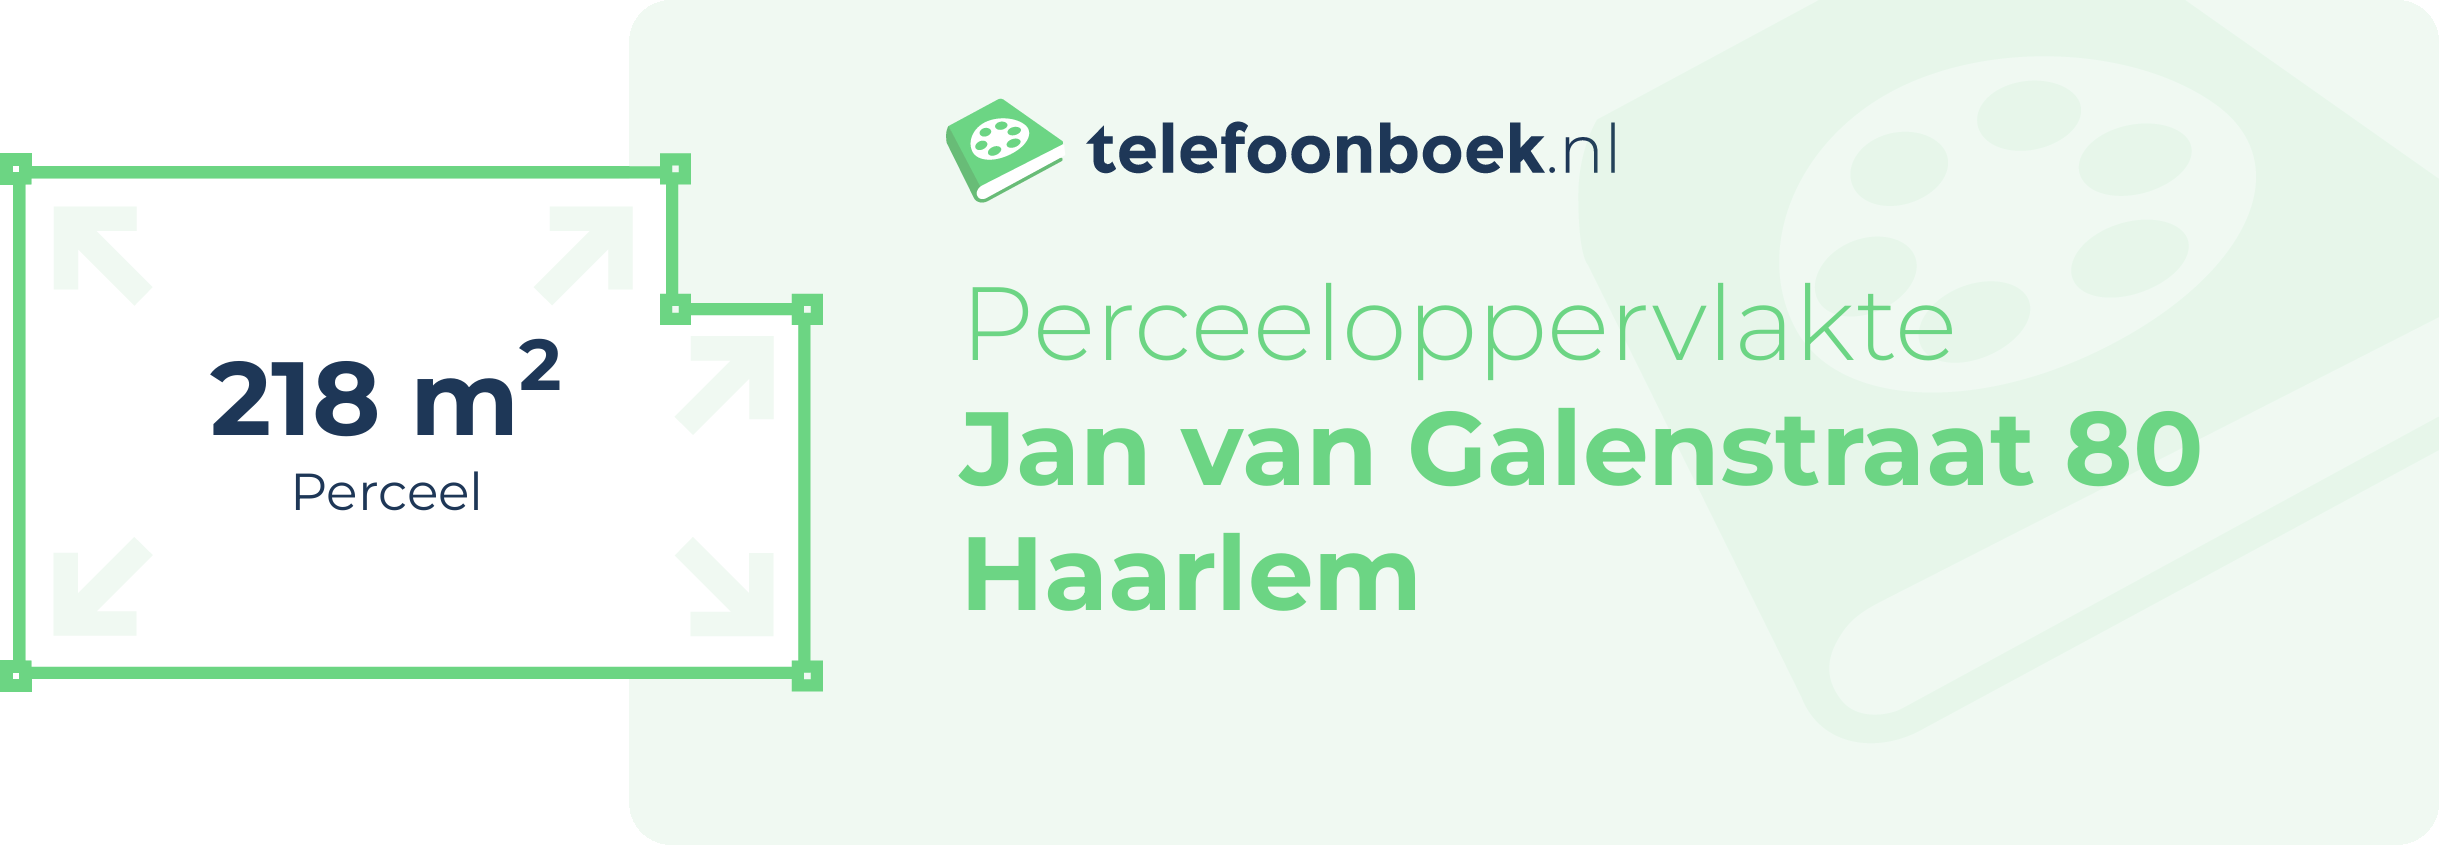 Perceeloppervlakte Jan Van Galenstraat 80 Haarlem